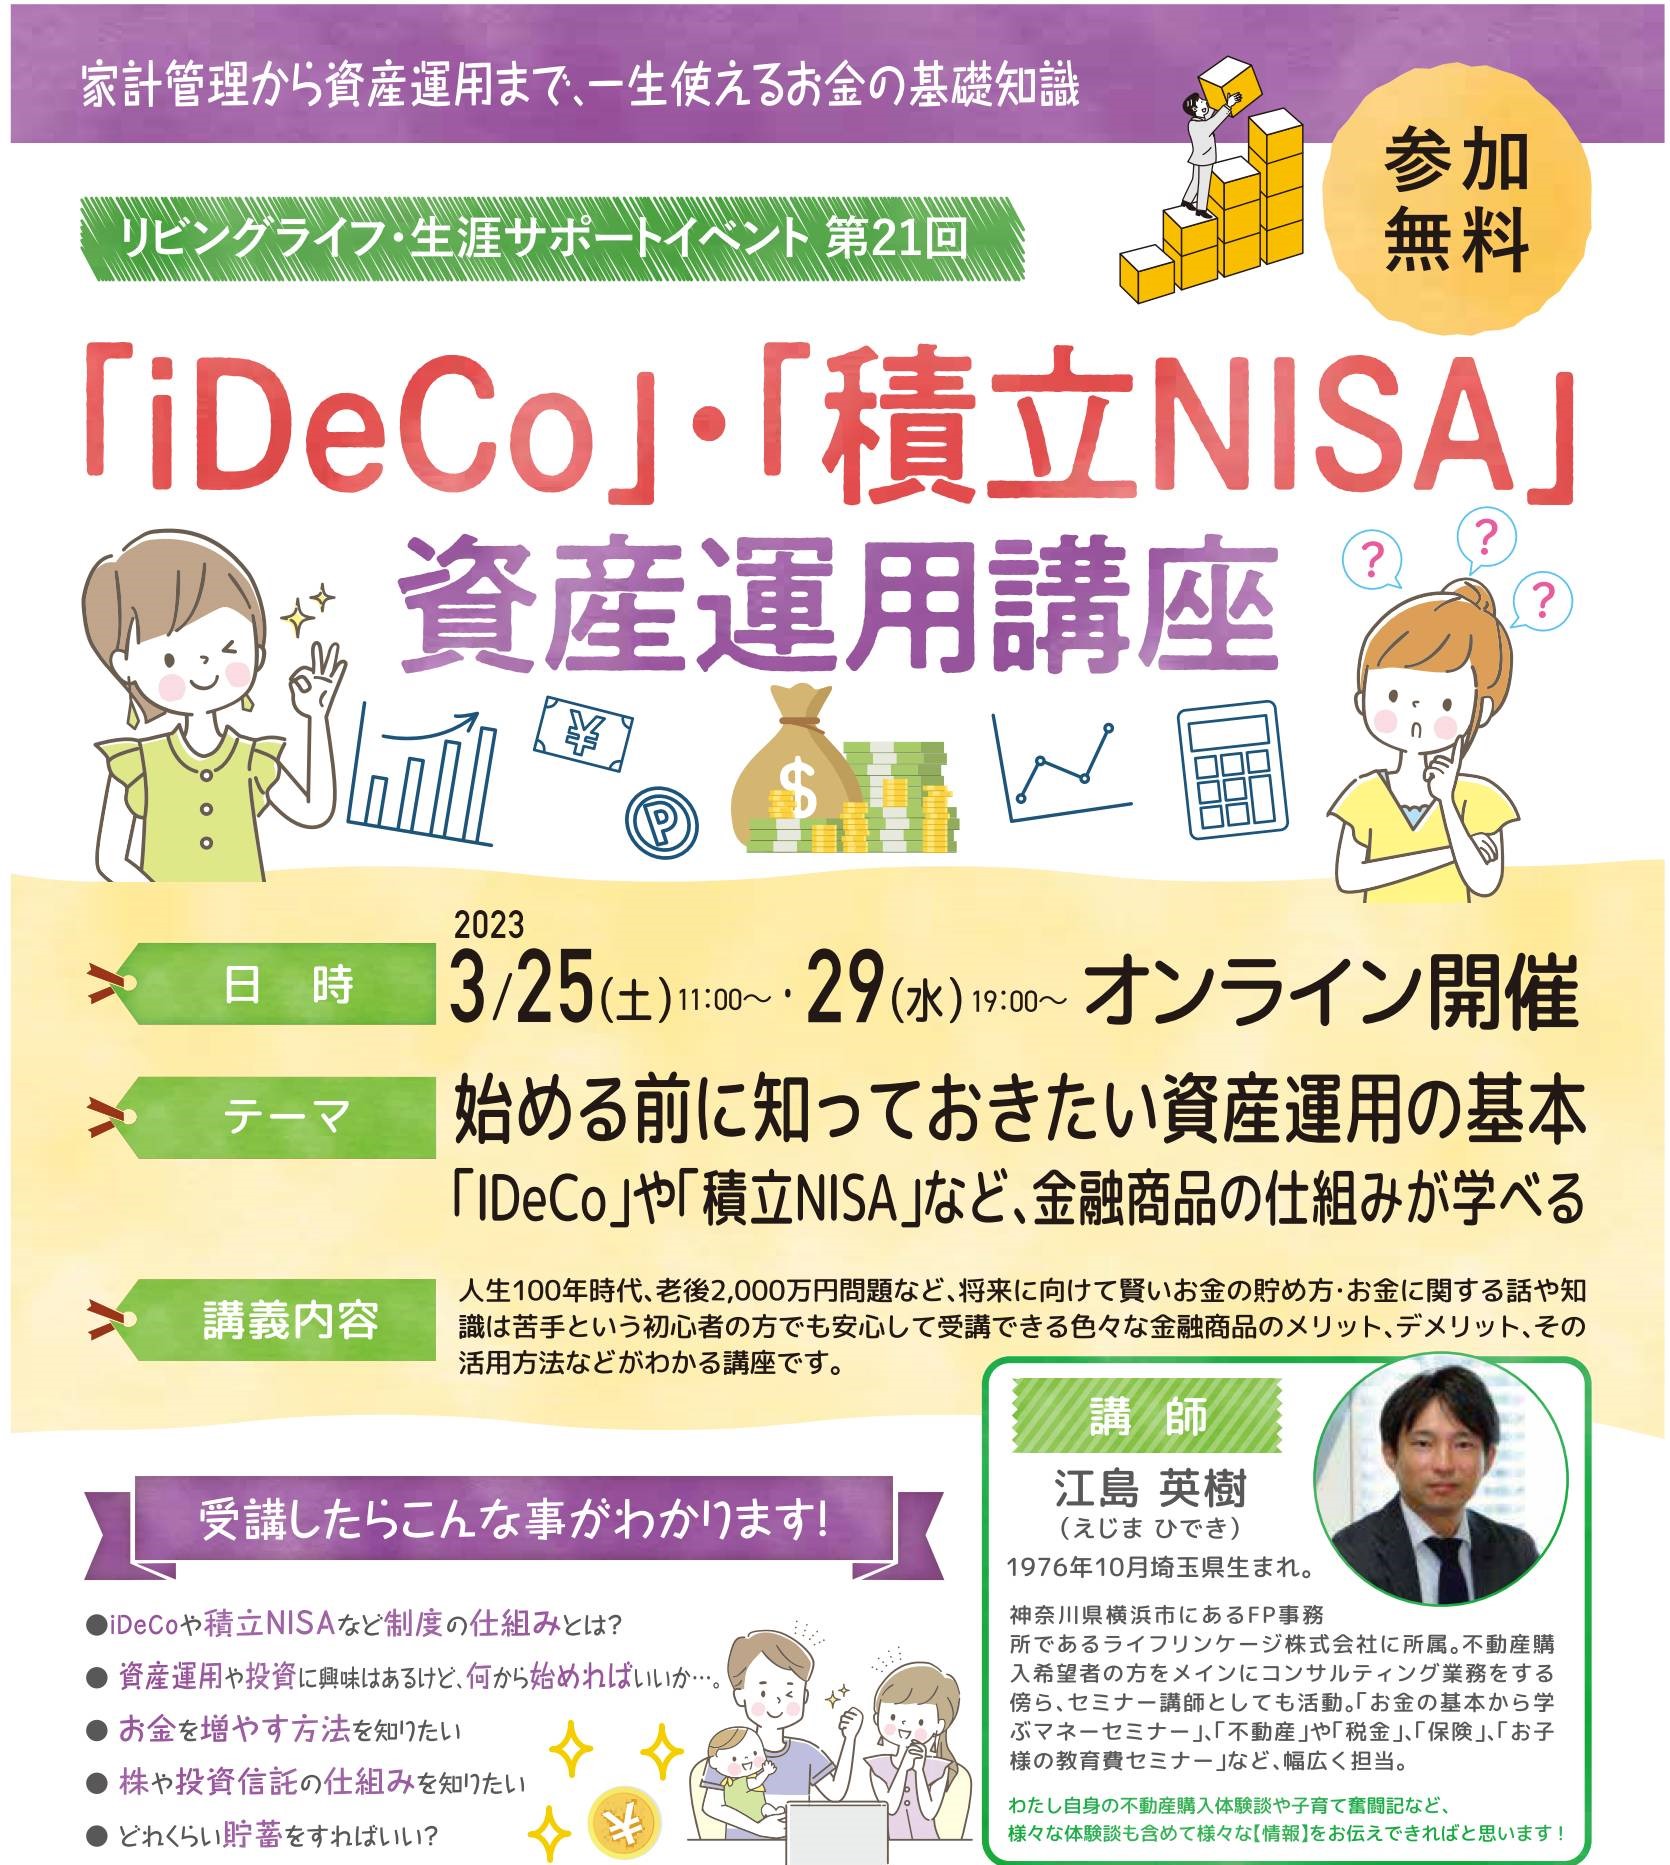 「iDeCo」・「積立NISA」資産運用講座